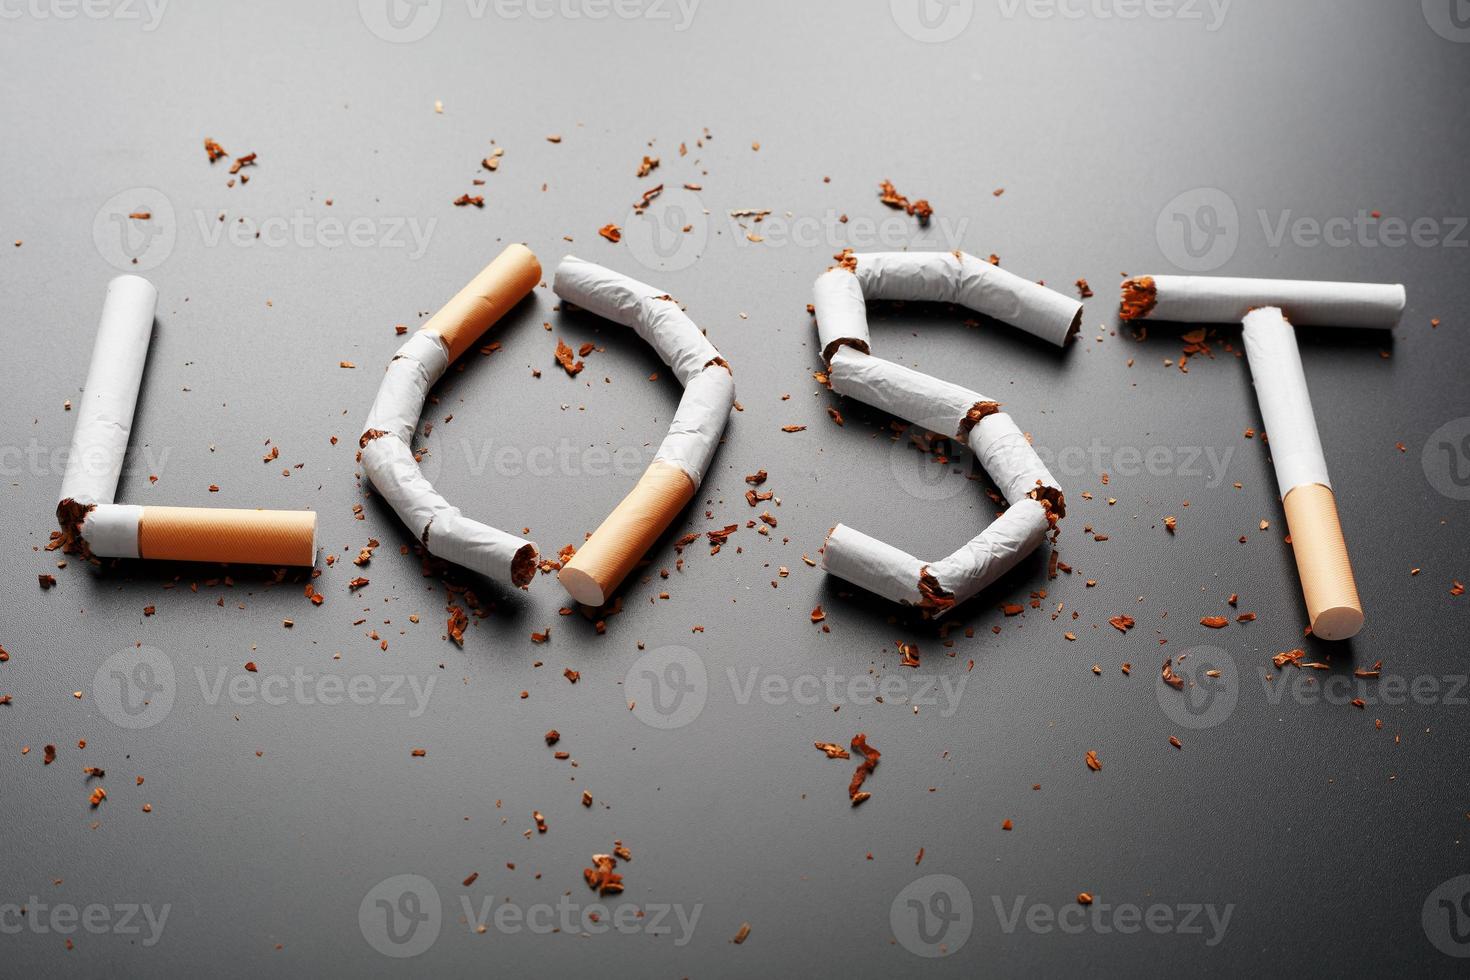 a inscrição perdida de cigarros em um fundo preto. Pare de fumar. o conceito de fumar mata. inscrição de motivação para parar de fumar, hábito pouco saudável. foto